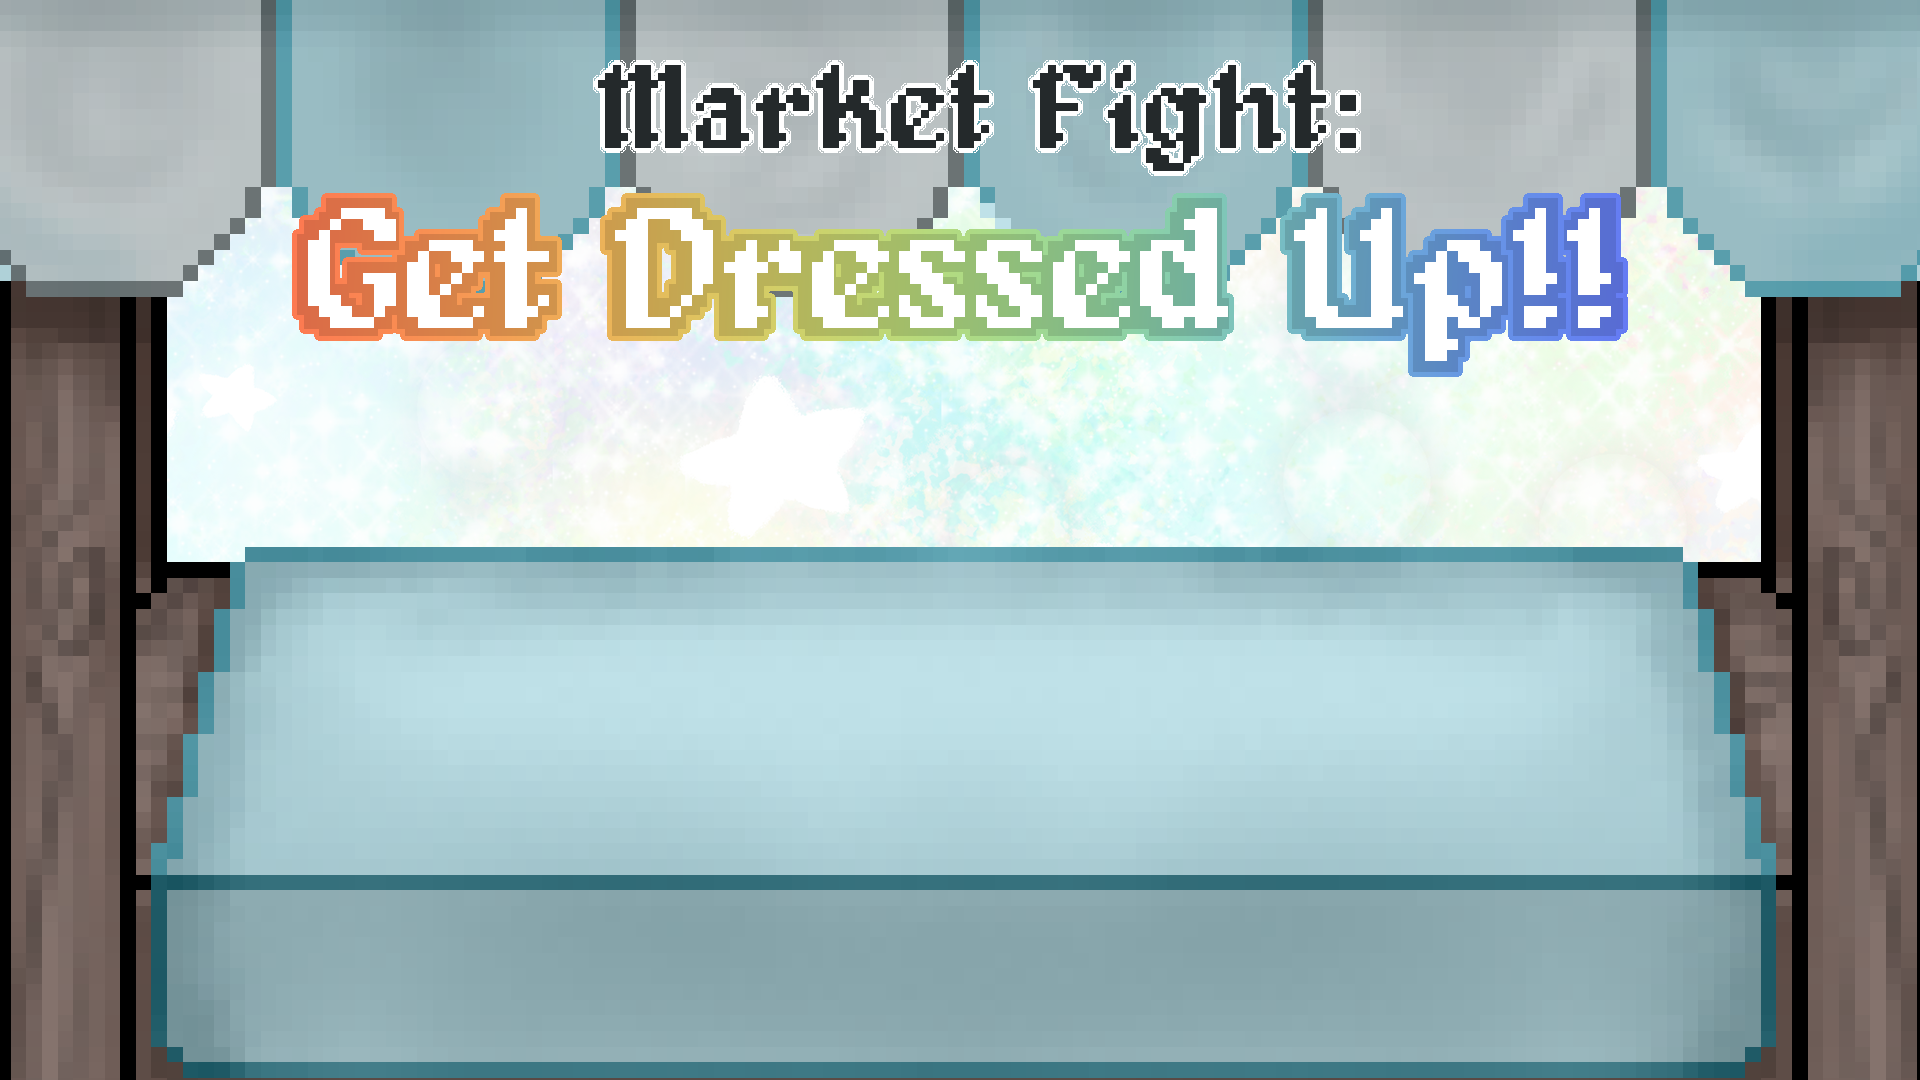 Market Fight: Get Dressed Up!